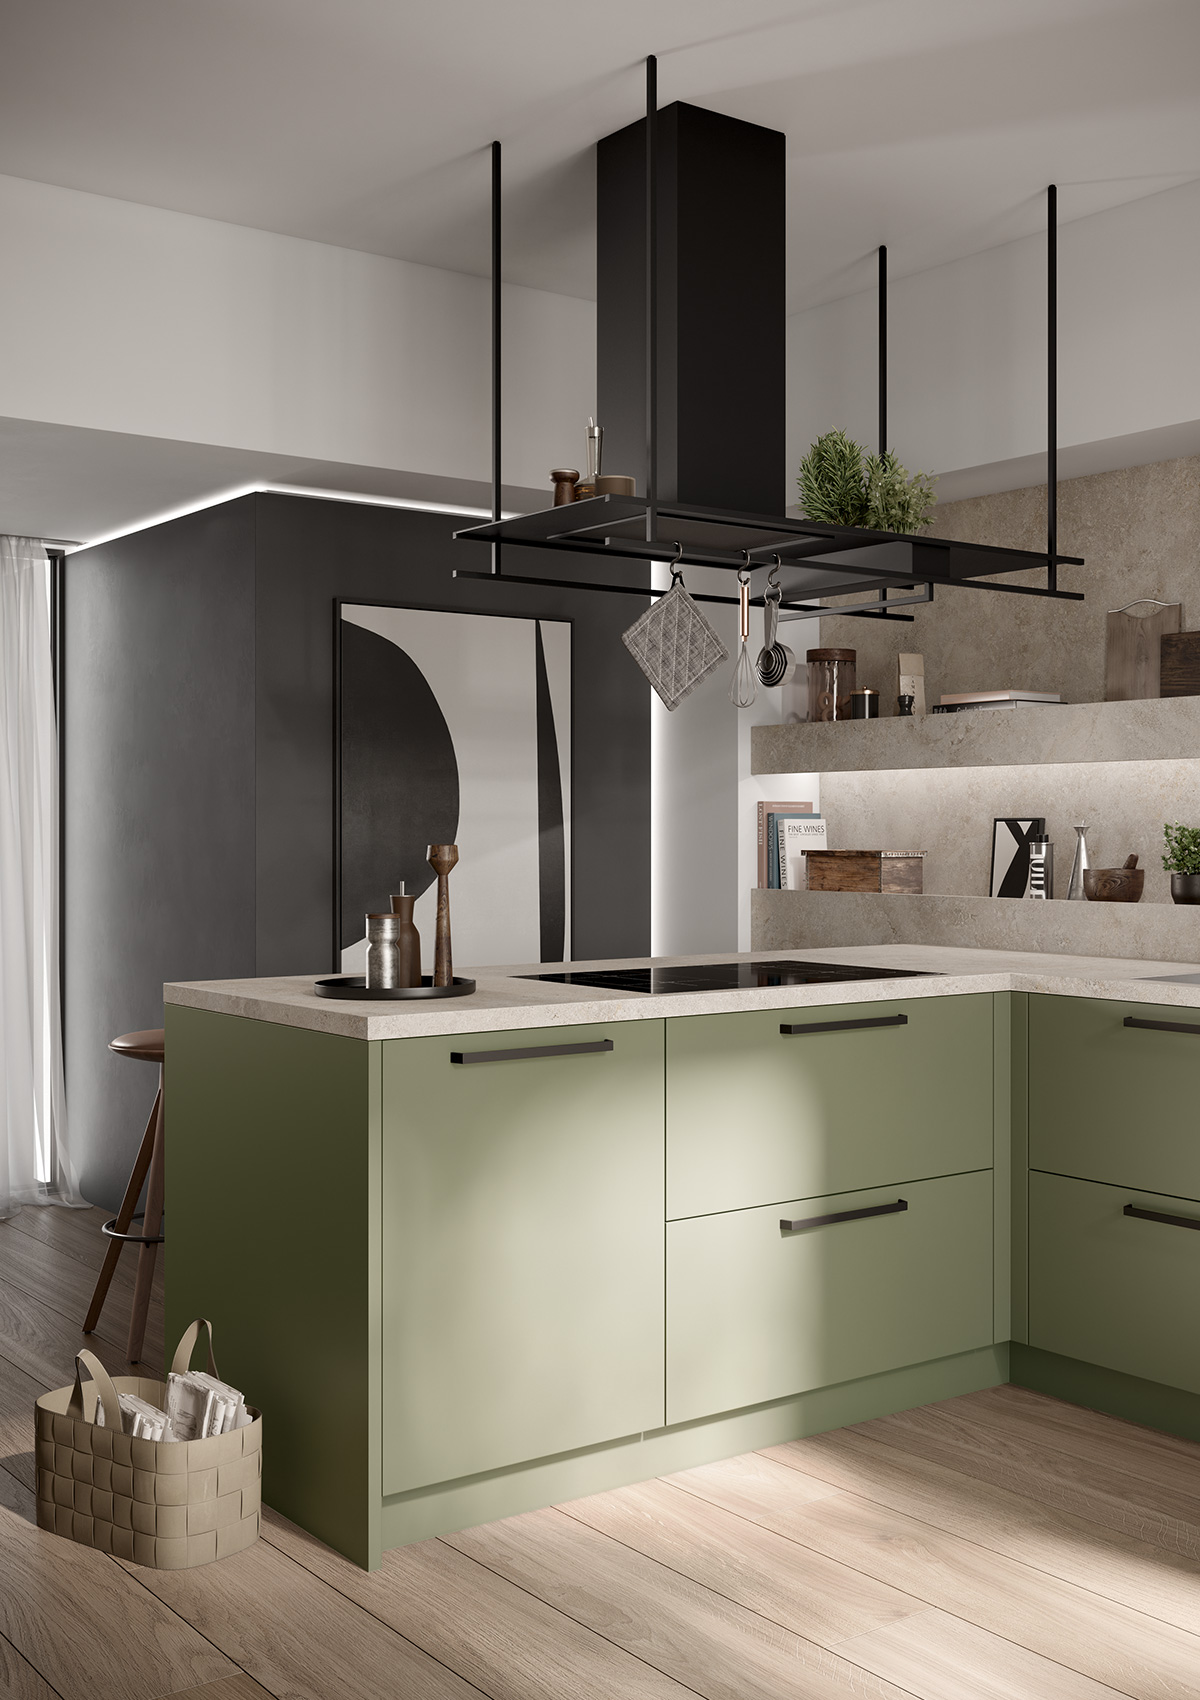 Vista detallada de la cocina iSCALA en verde oliva